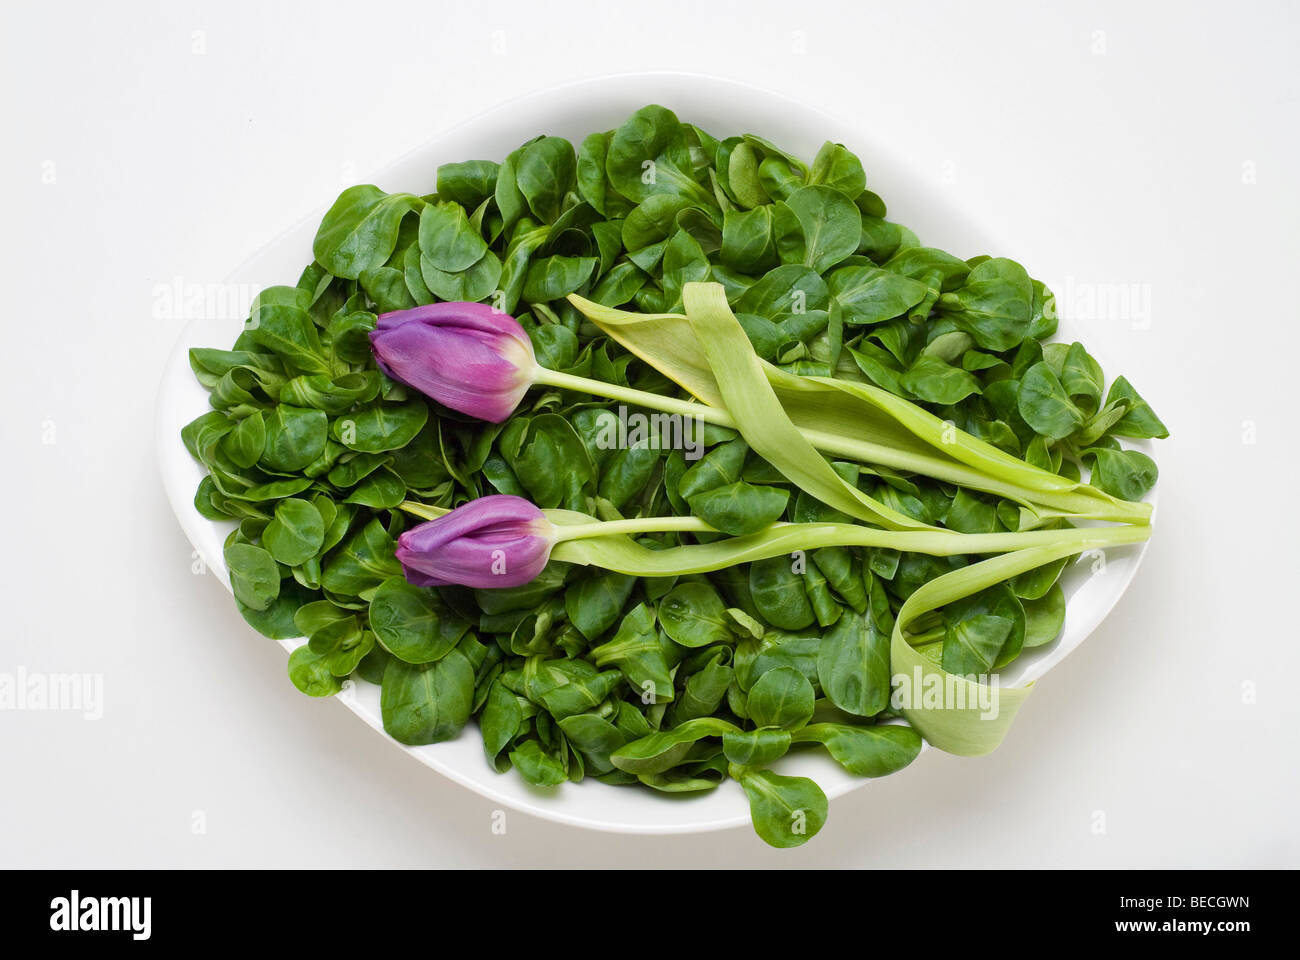 Field salad (Valerianella locusta) and two tulips (Tulipa) Stock Photo